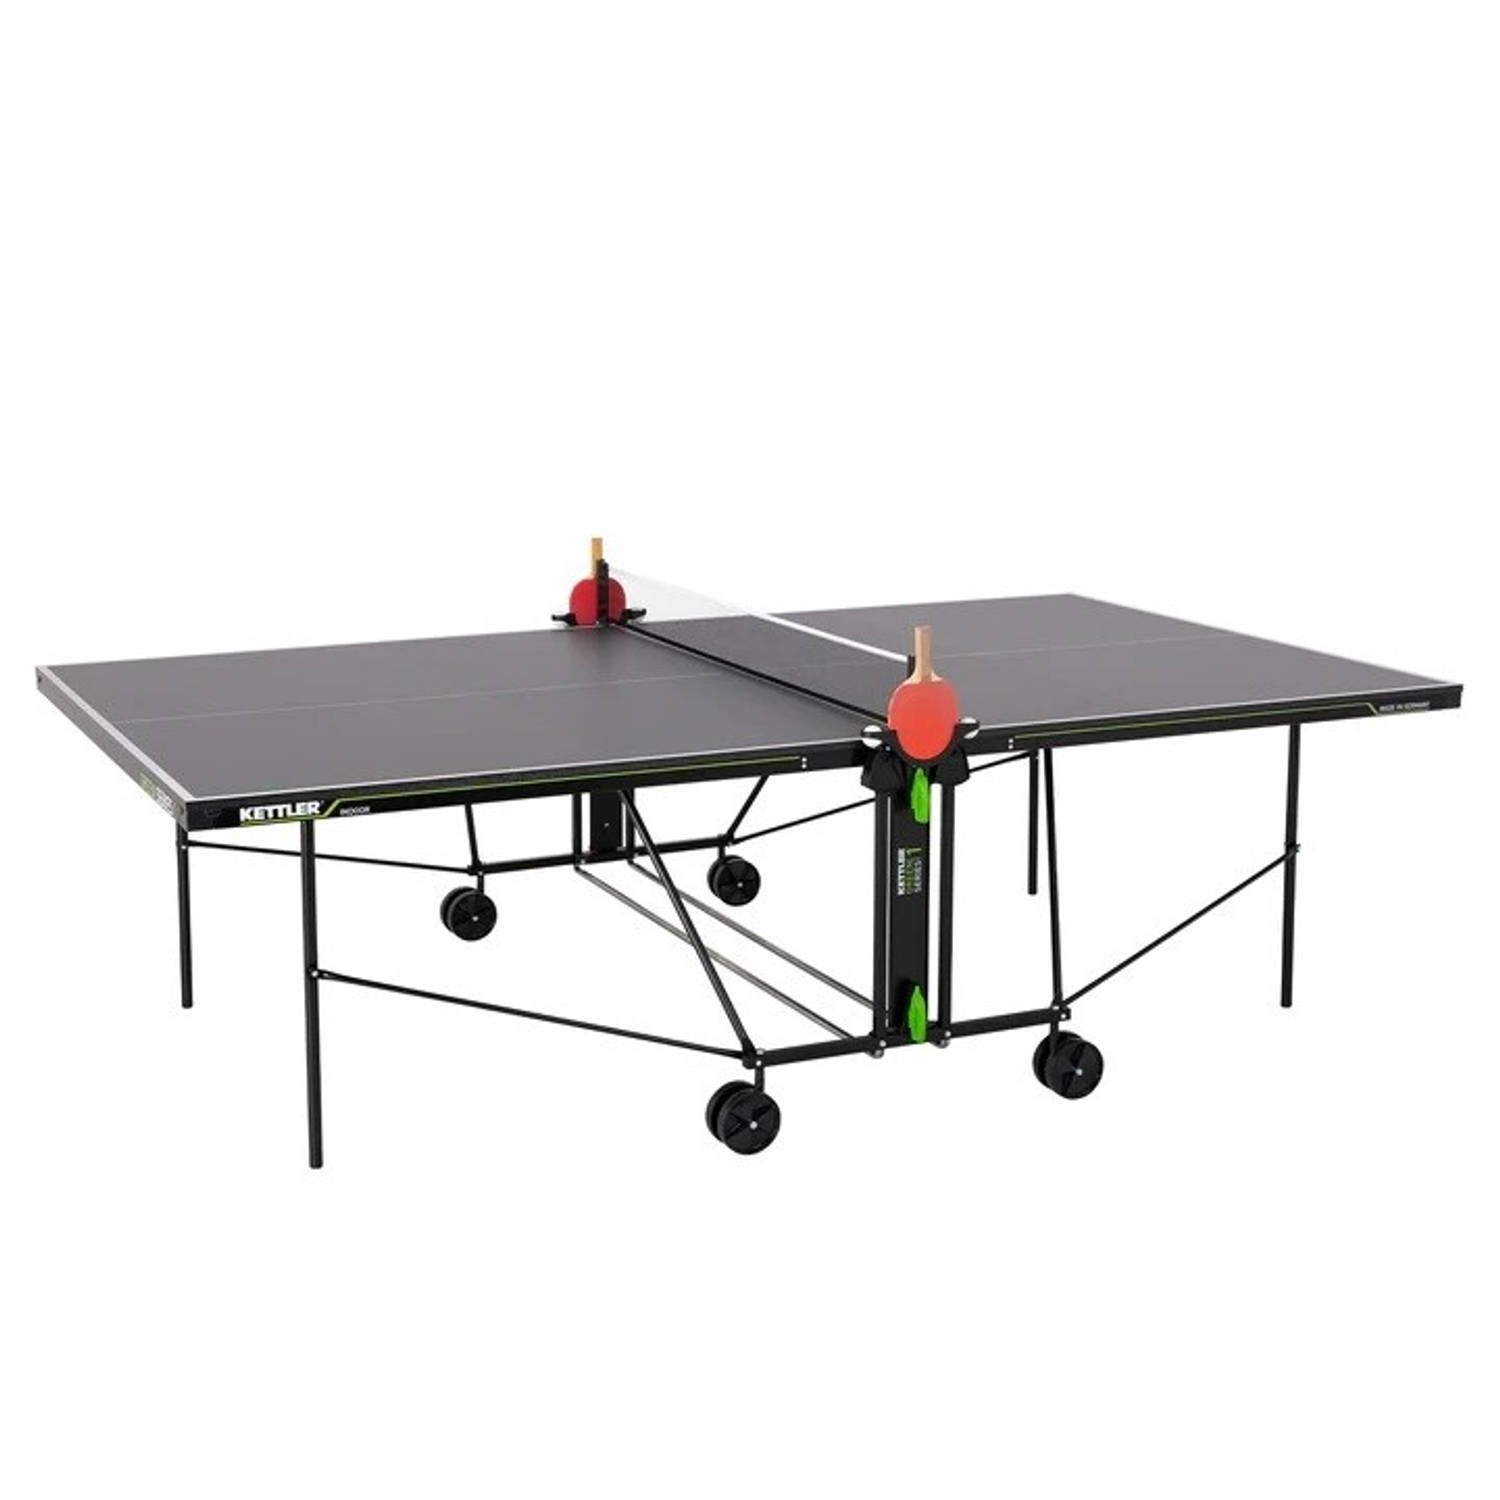 Kettler K1 tafeltennistafel - Opklapbaar - Indoor - Pingpong tafel